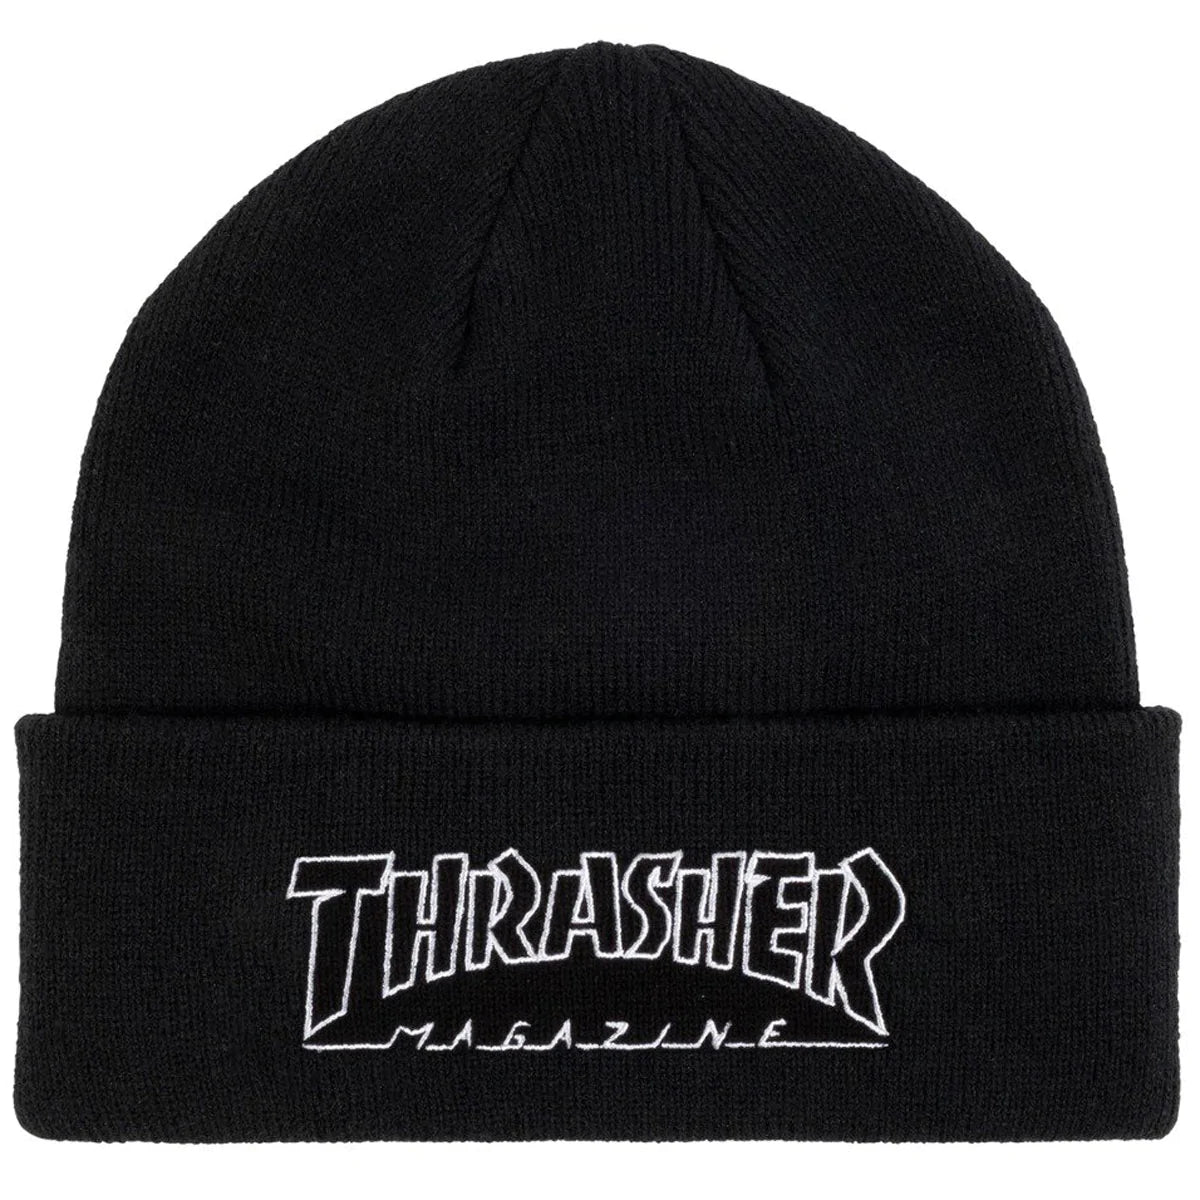 Thrasher Outlined Logo Beanie - Black image 1